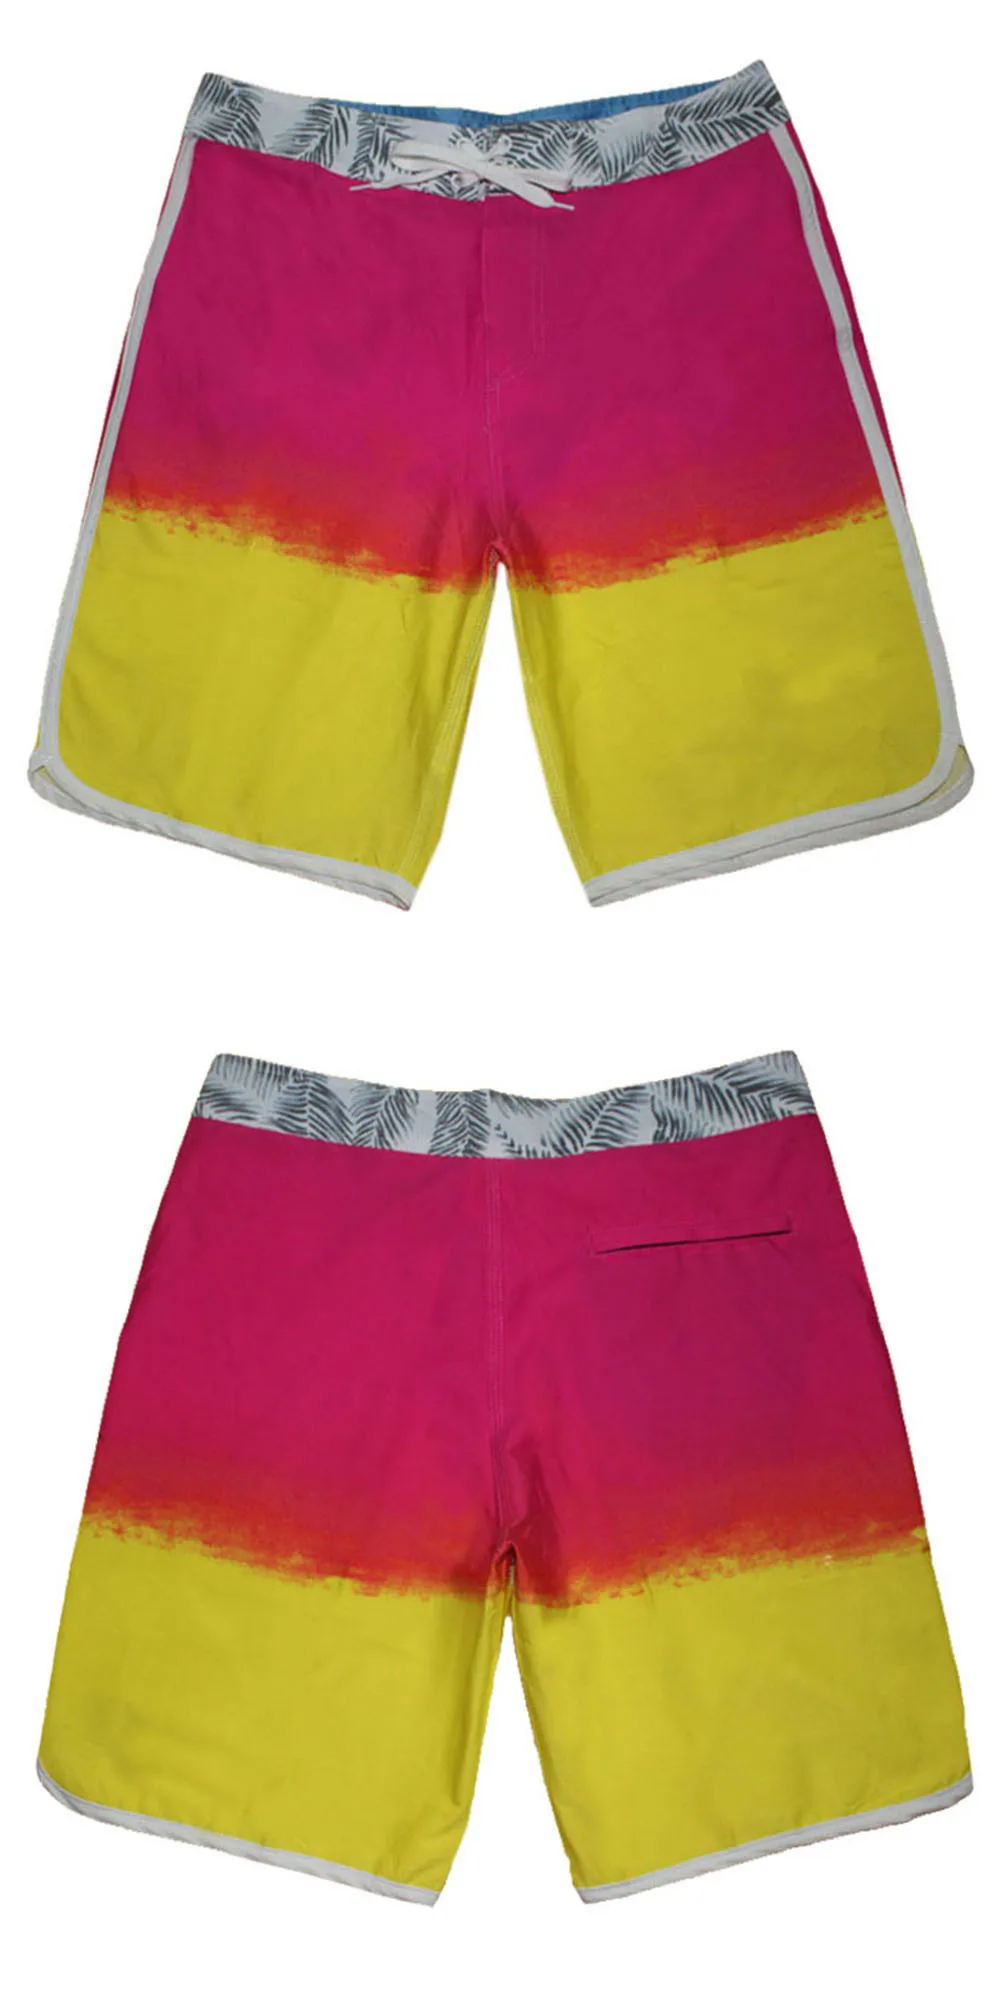 Новые модные мужские шорты бермуды, водонепроницаемые пляжные шорты из эластана и спандекса, мужские повседневные шорты 30-38 - Цвет: Кораллово-Красный